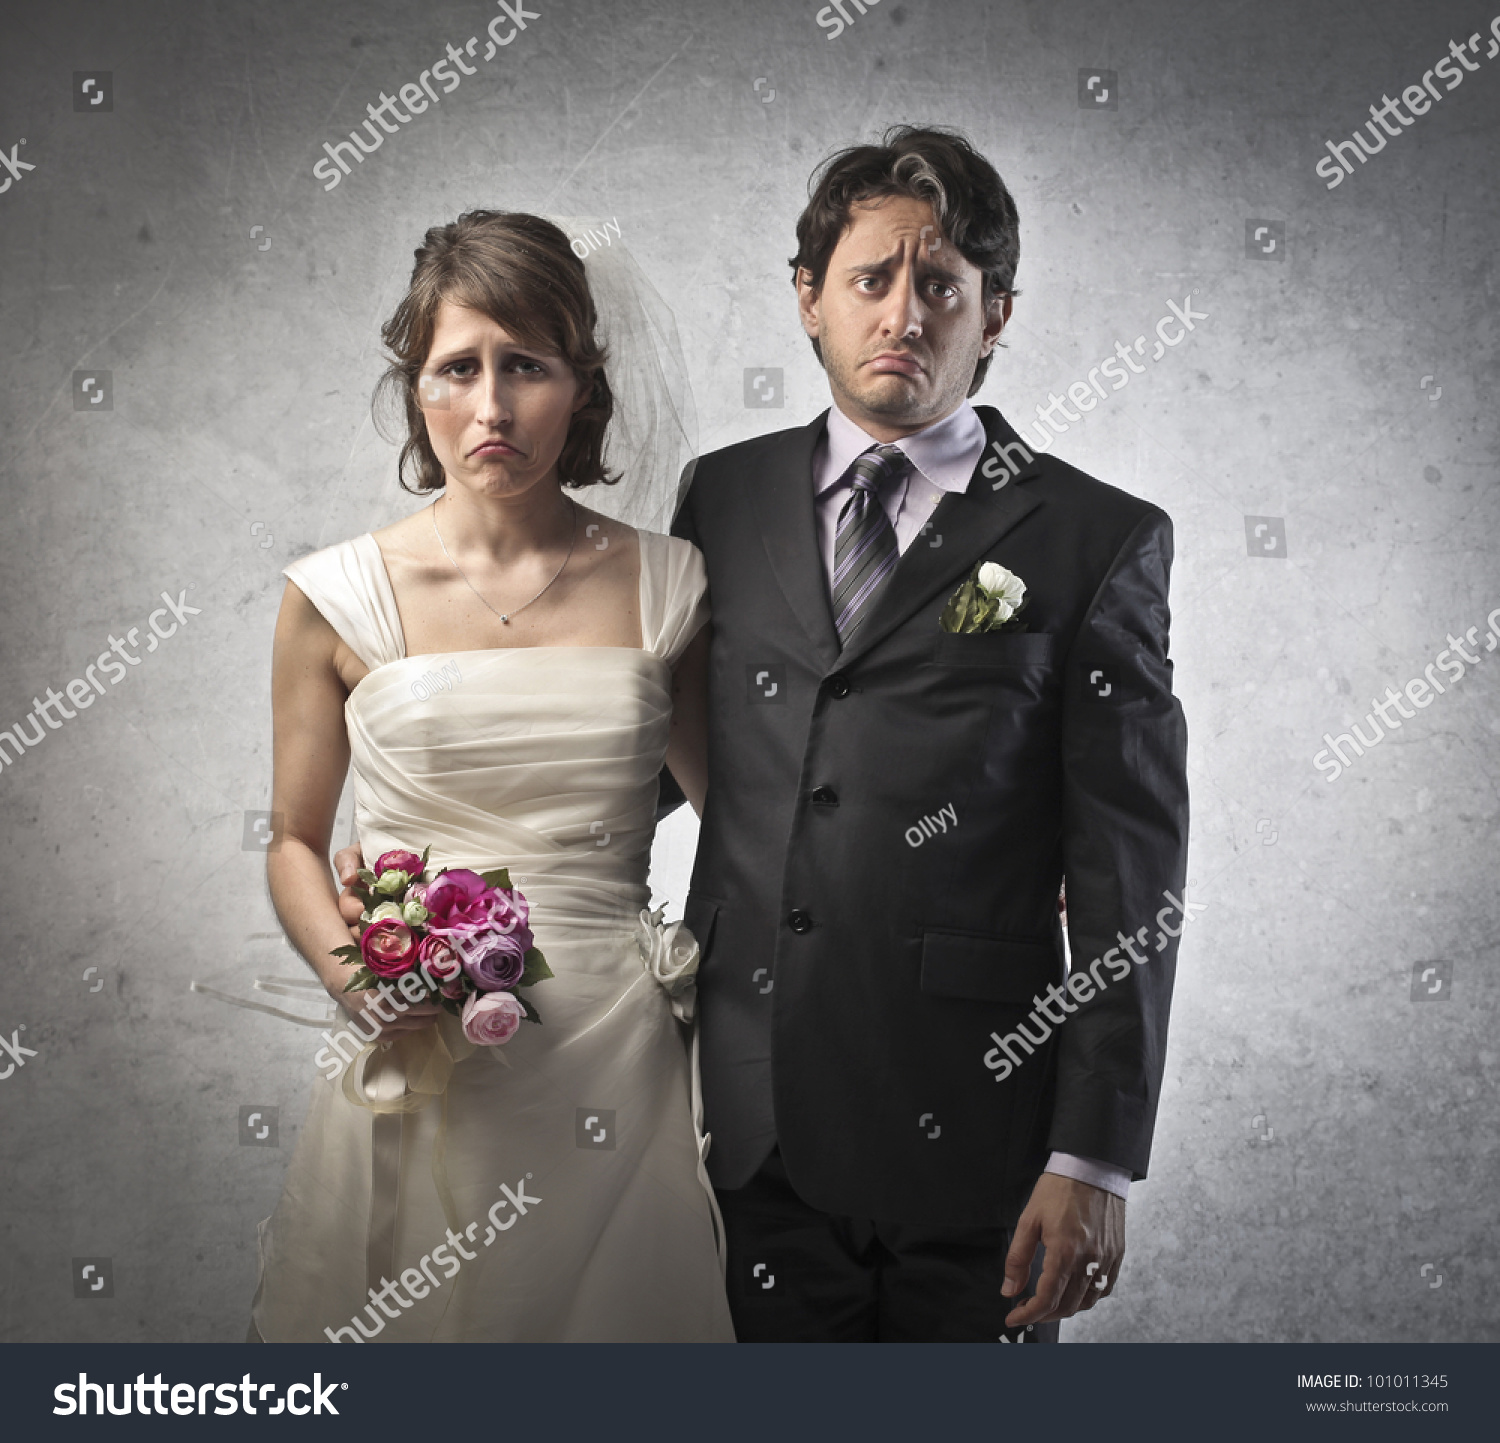 Демотиваторы про замужество